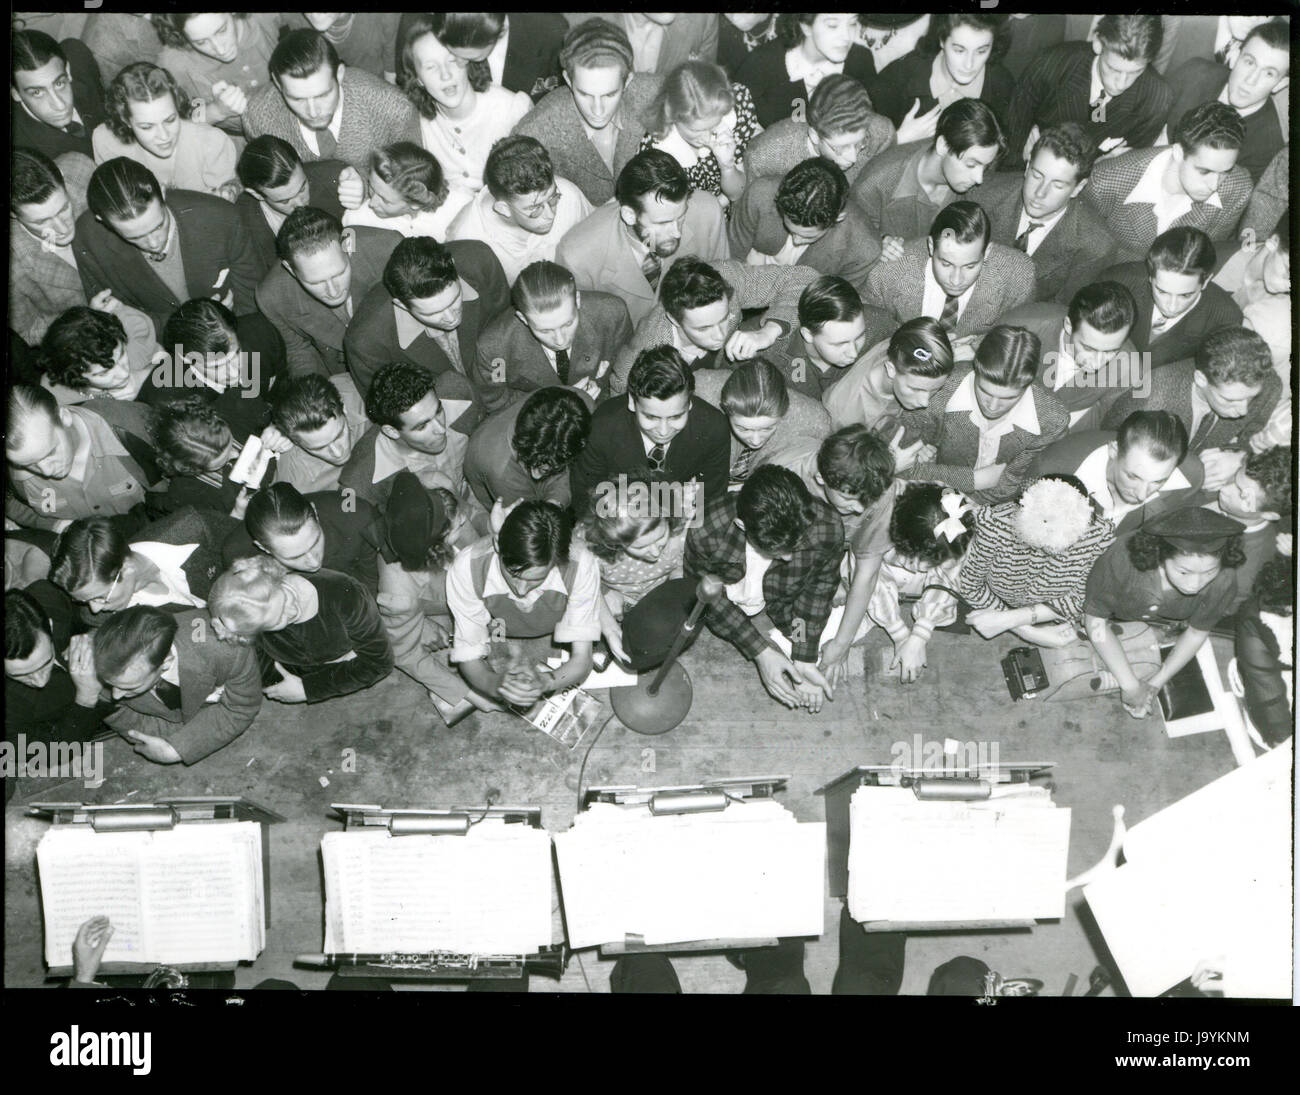 Oakland, la California, 26 Aprile 1940 - gli appassionati di Swing affollano la band stand ad un aspetto di Benny Goodman band in un locale dance hall. Foto Stock